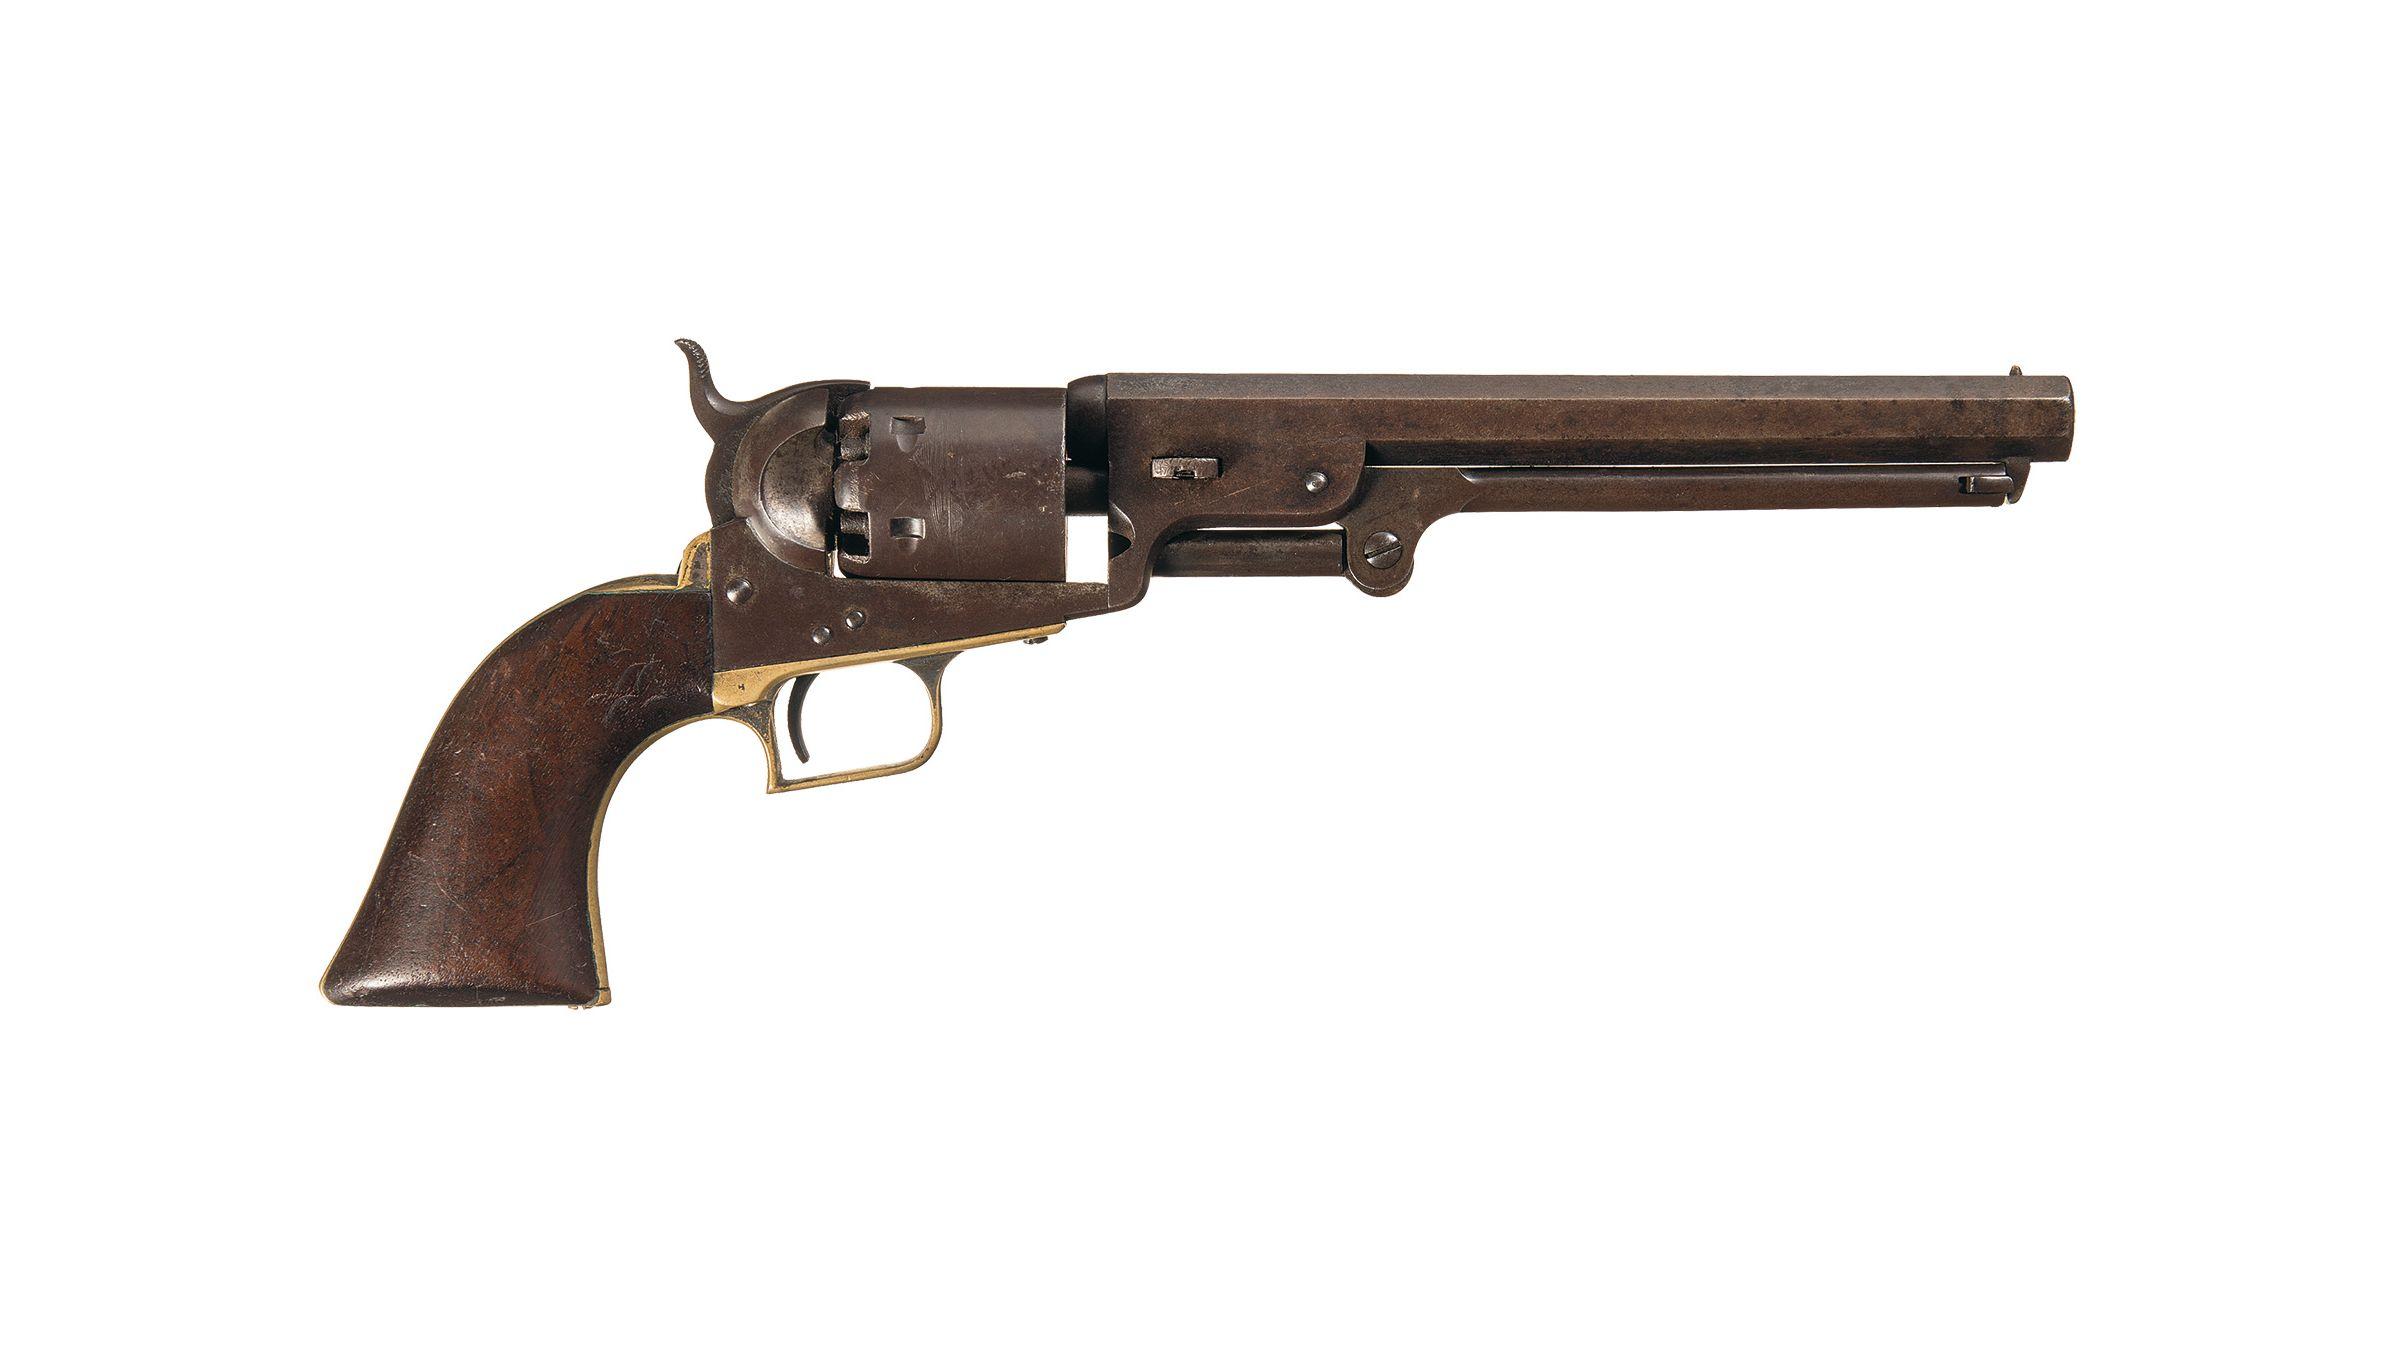 Colt Squareback Model 1851 Navy "Wedge Over Screw" Revolver